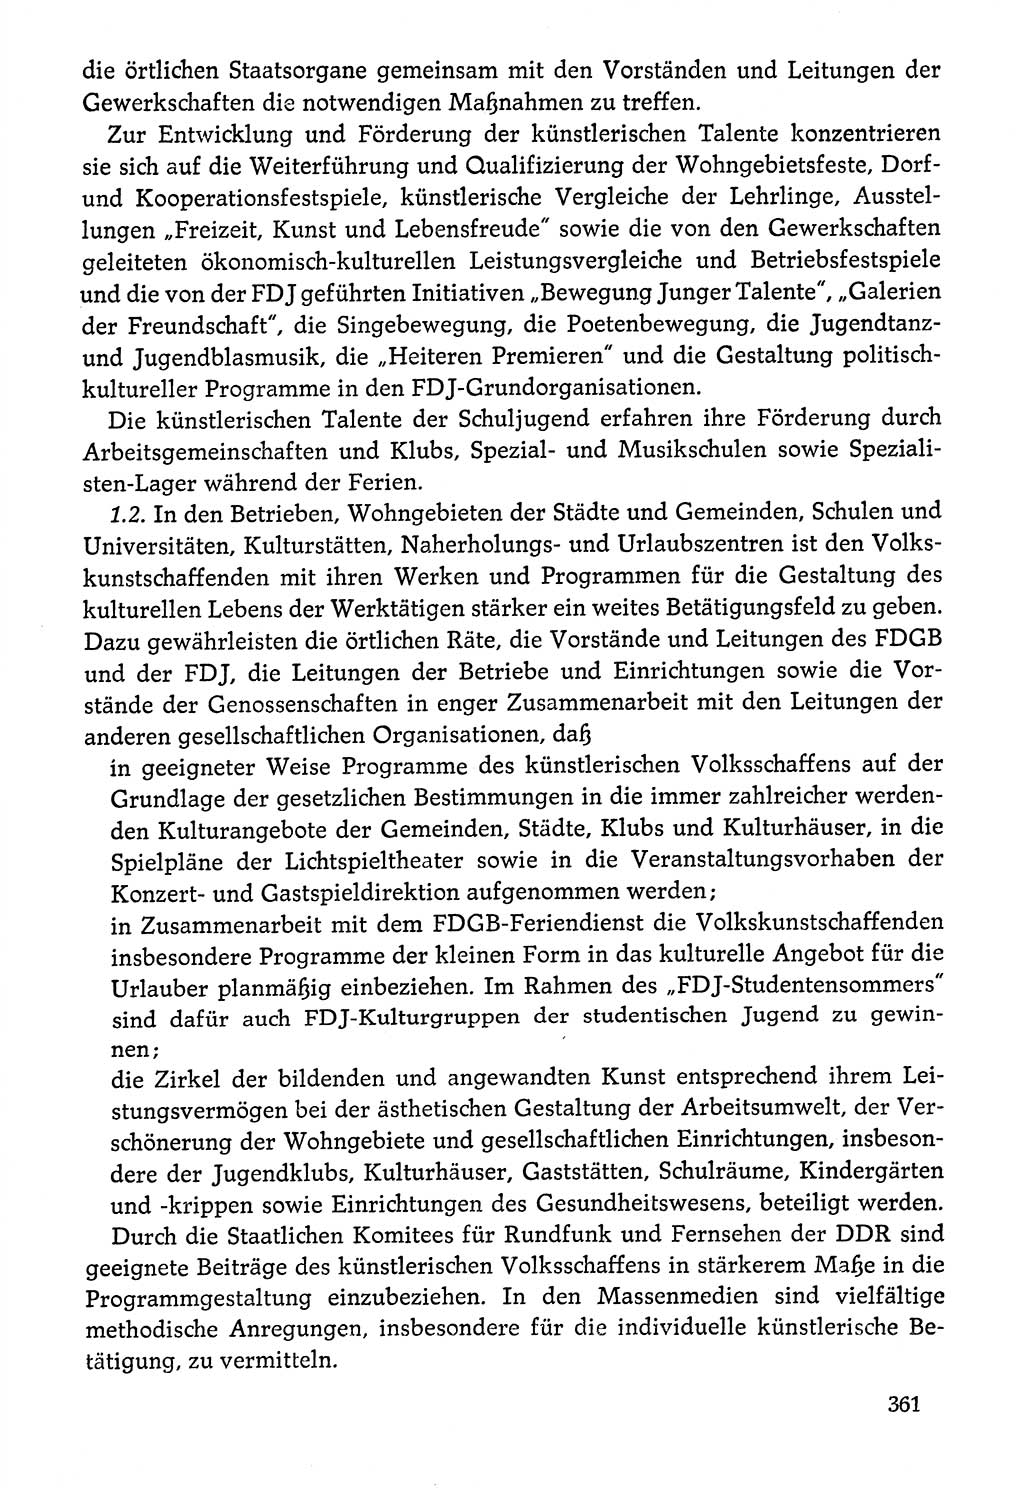 Dokumente der Sozialistischen Einheitspartei Deutschlands (SED) [Deutsche Demokratische Republik (DDR)] 1976-1977, Seite 361 (Dok. SED DDR 1976-1977, S. 361)